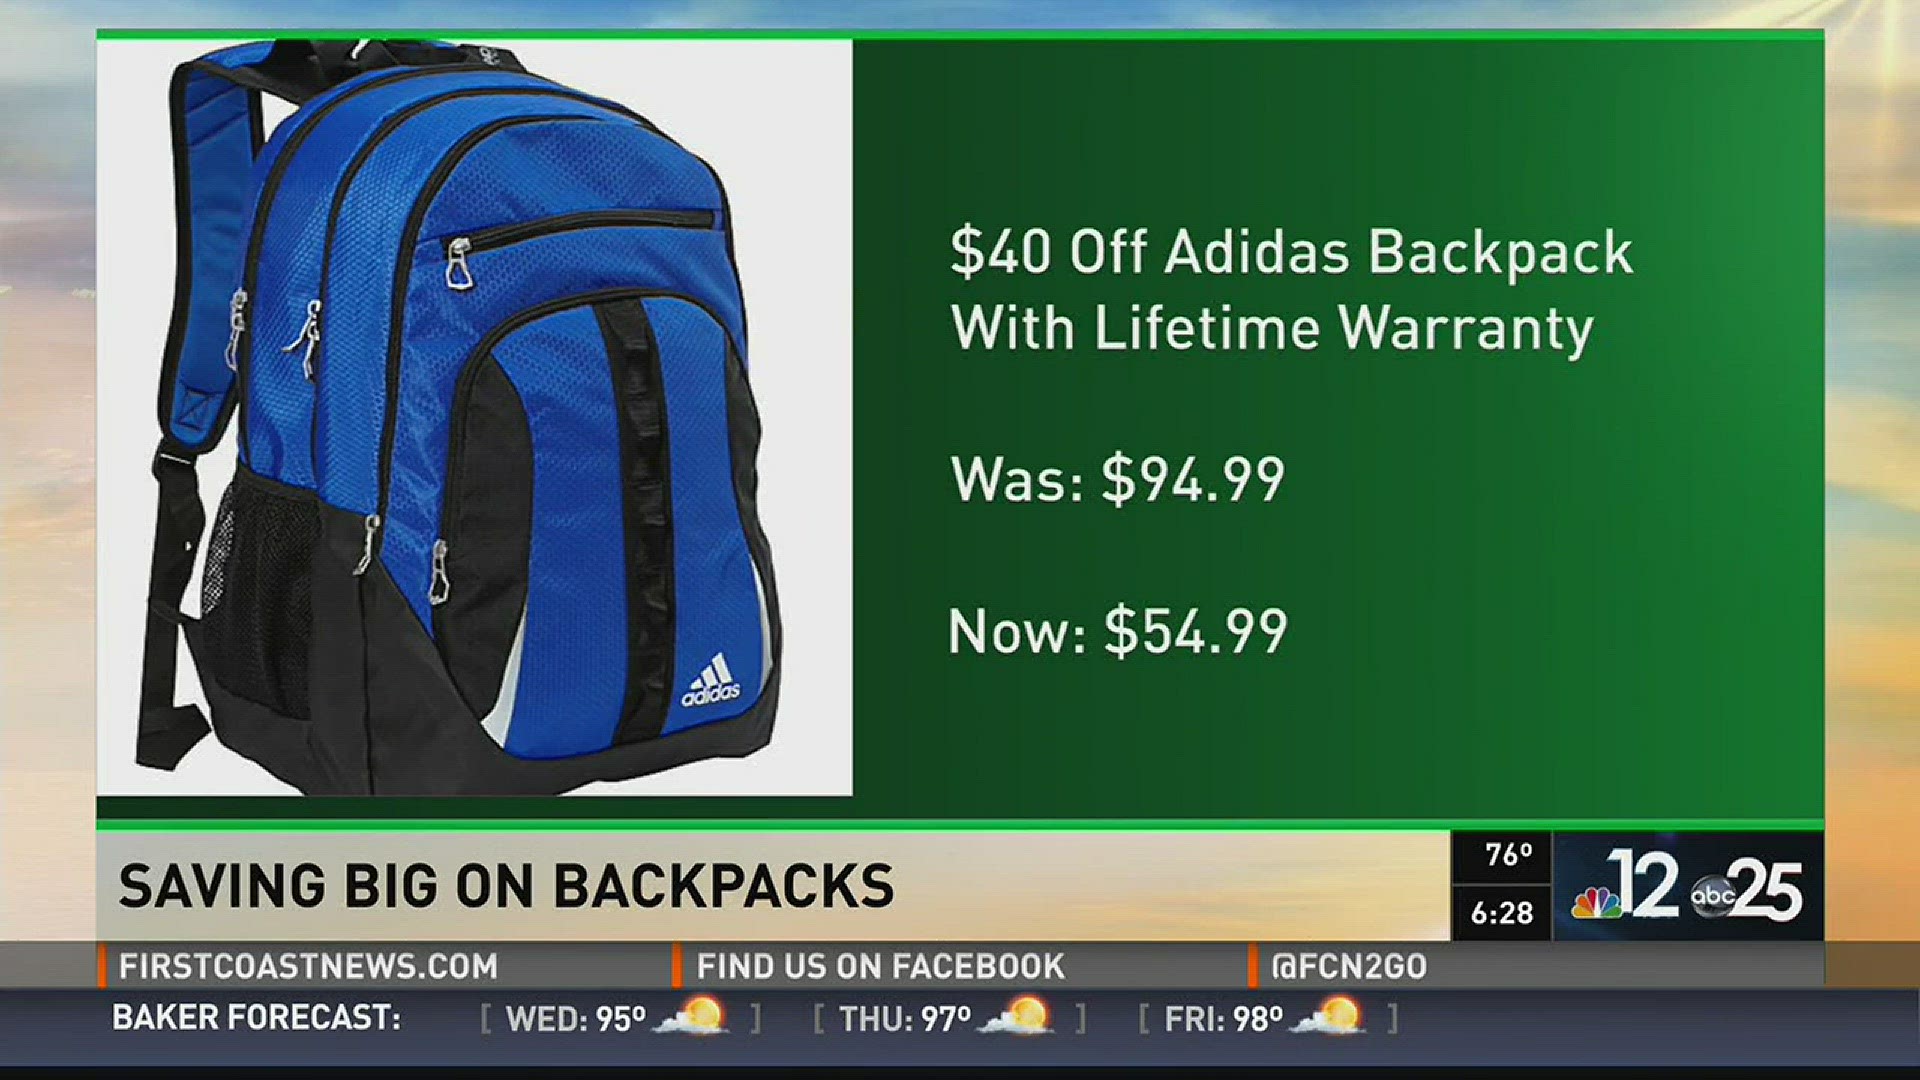 Saving big on backpacks